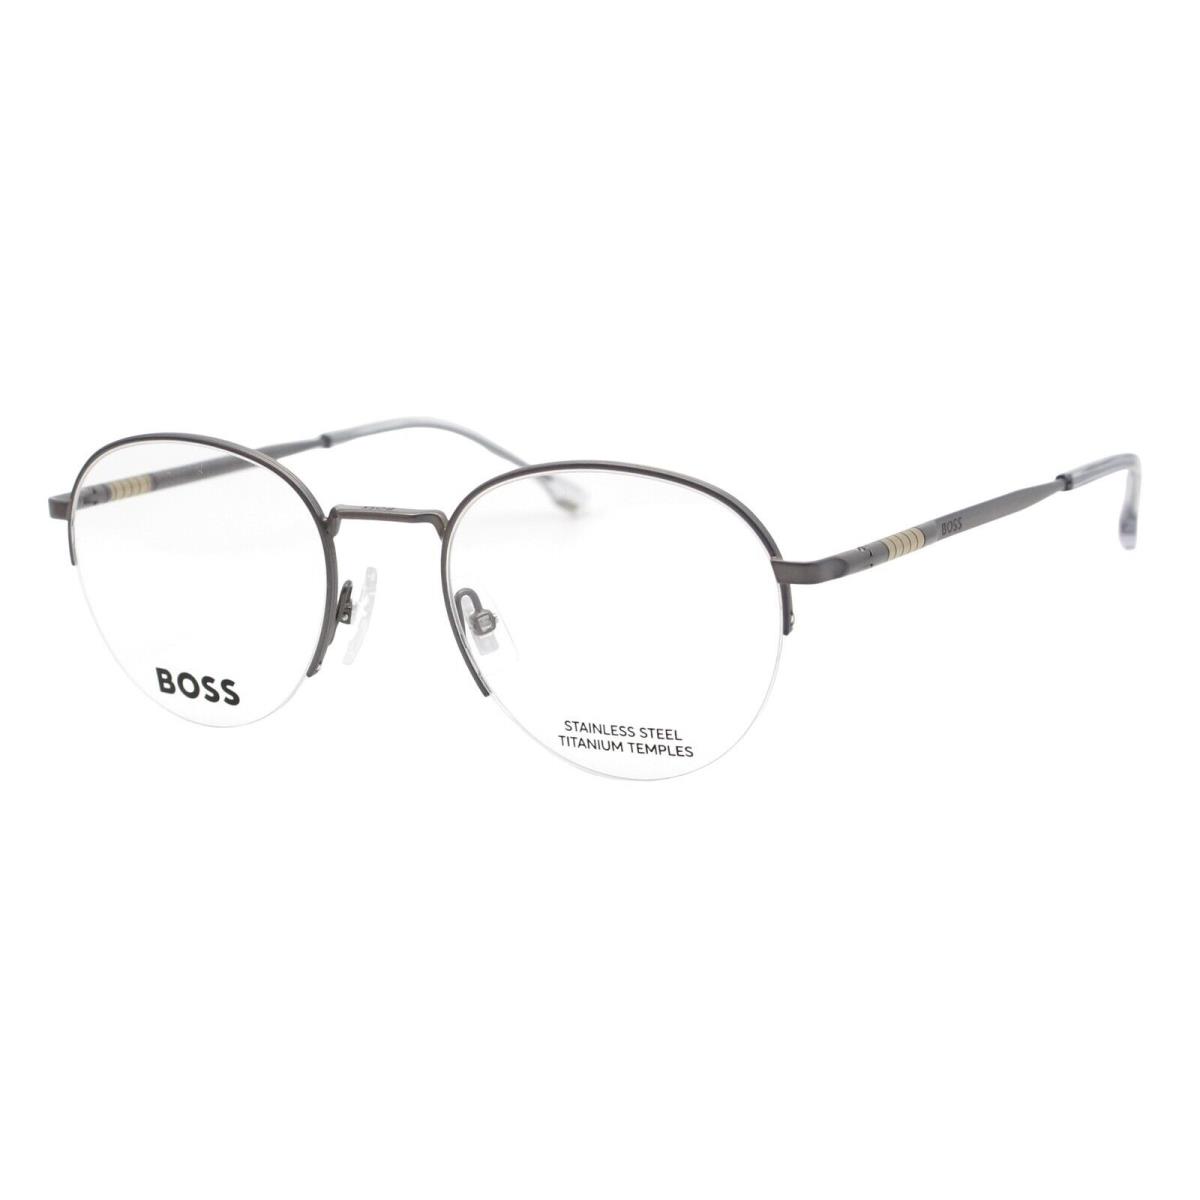 Hugo Boss 1448 R81 Matte Gray Men s Half Rim Eyeglasses 51-21-145 W/case - Frame: Gray